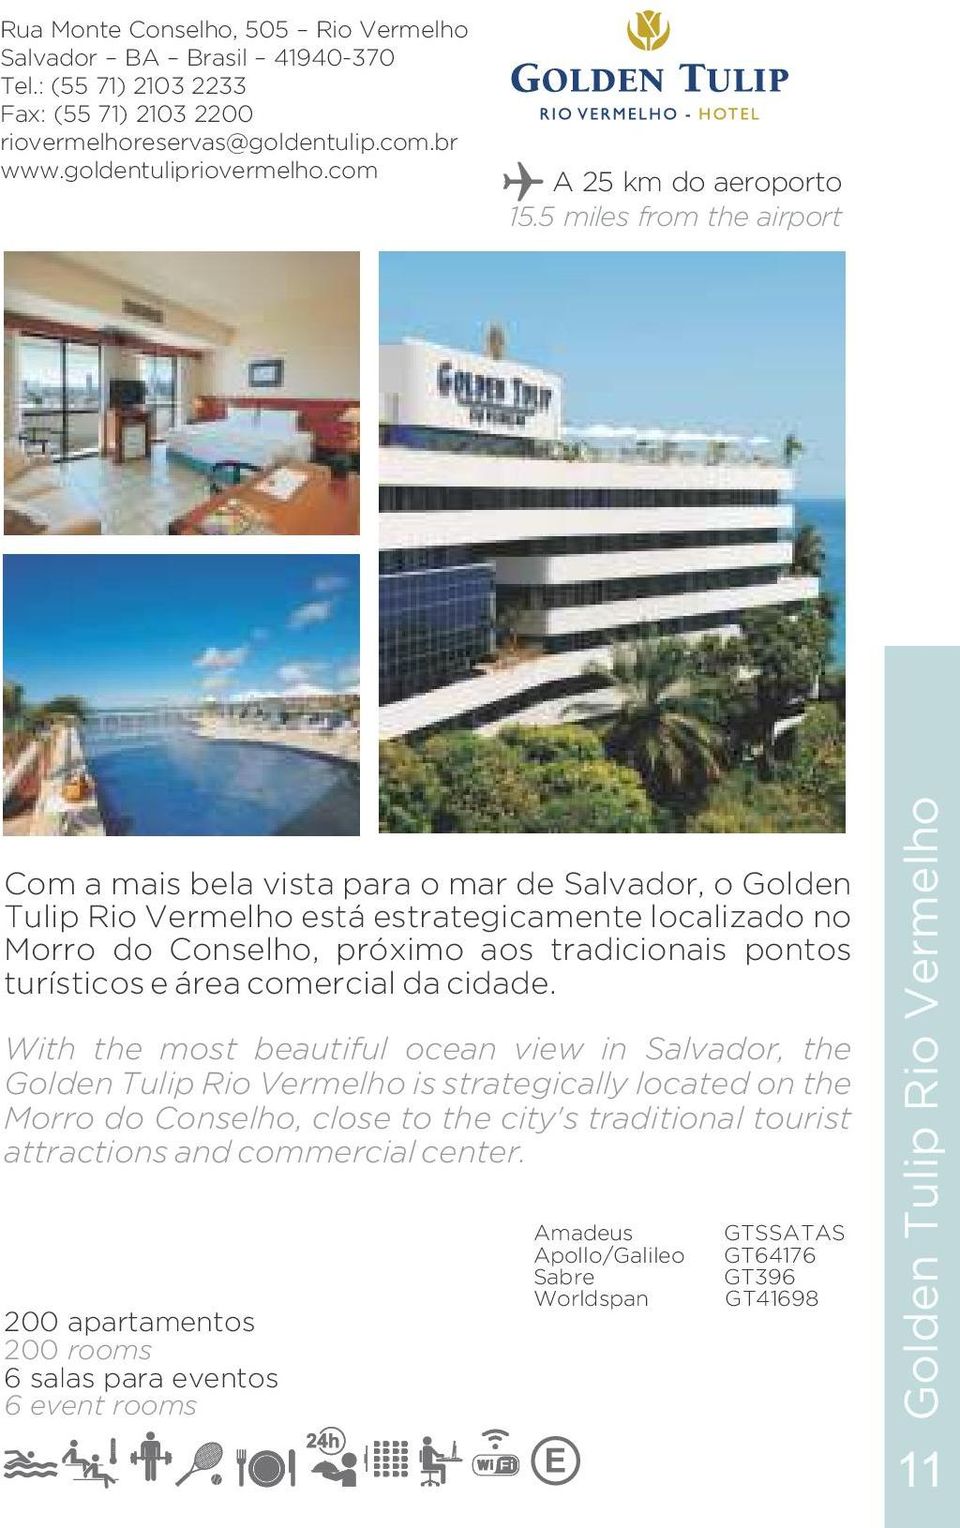 5 miles from the airport Com a mais bela vista para o mar de Salvador, o Golden Tulip Rio Vermelho está estrategicamente localizado no Morro do Conselho, próximo aos tradicionais pontos turísticos